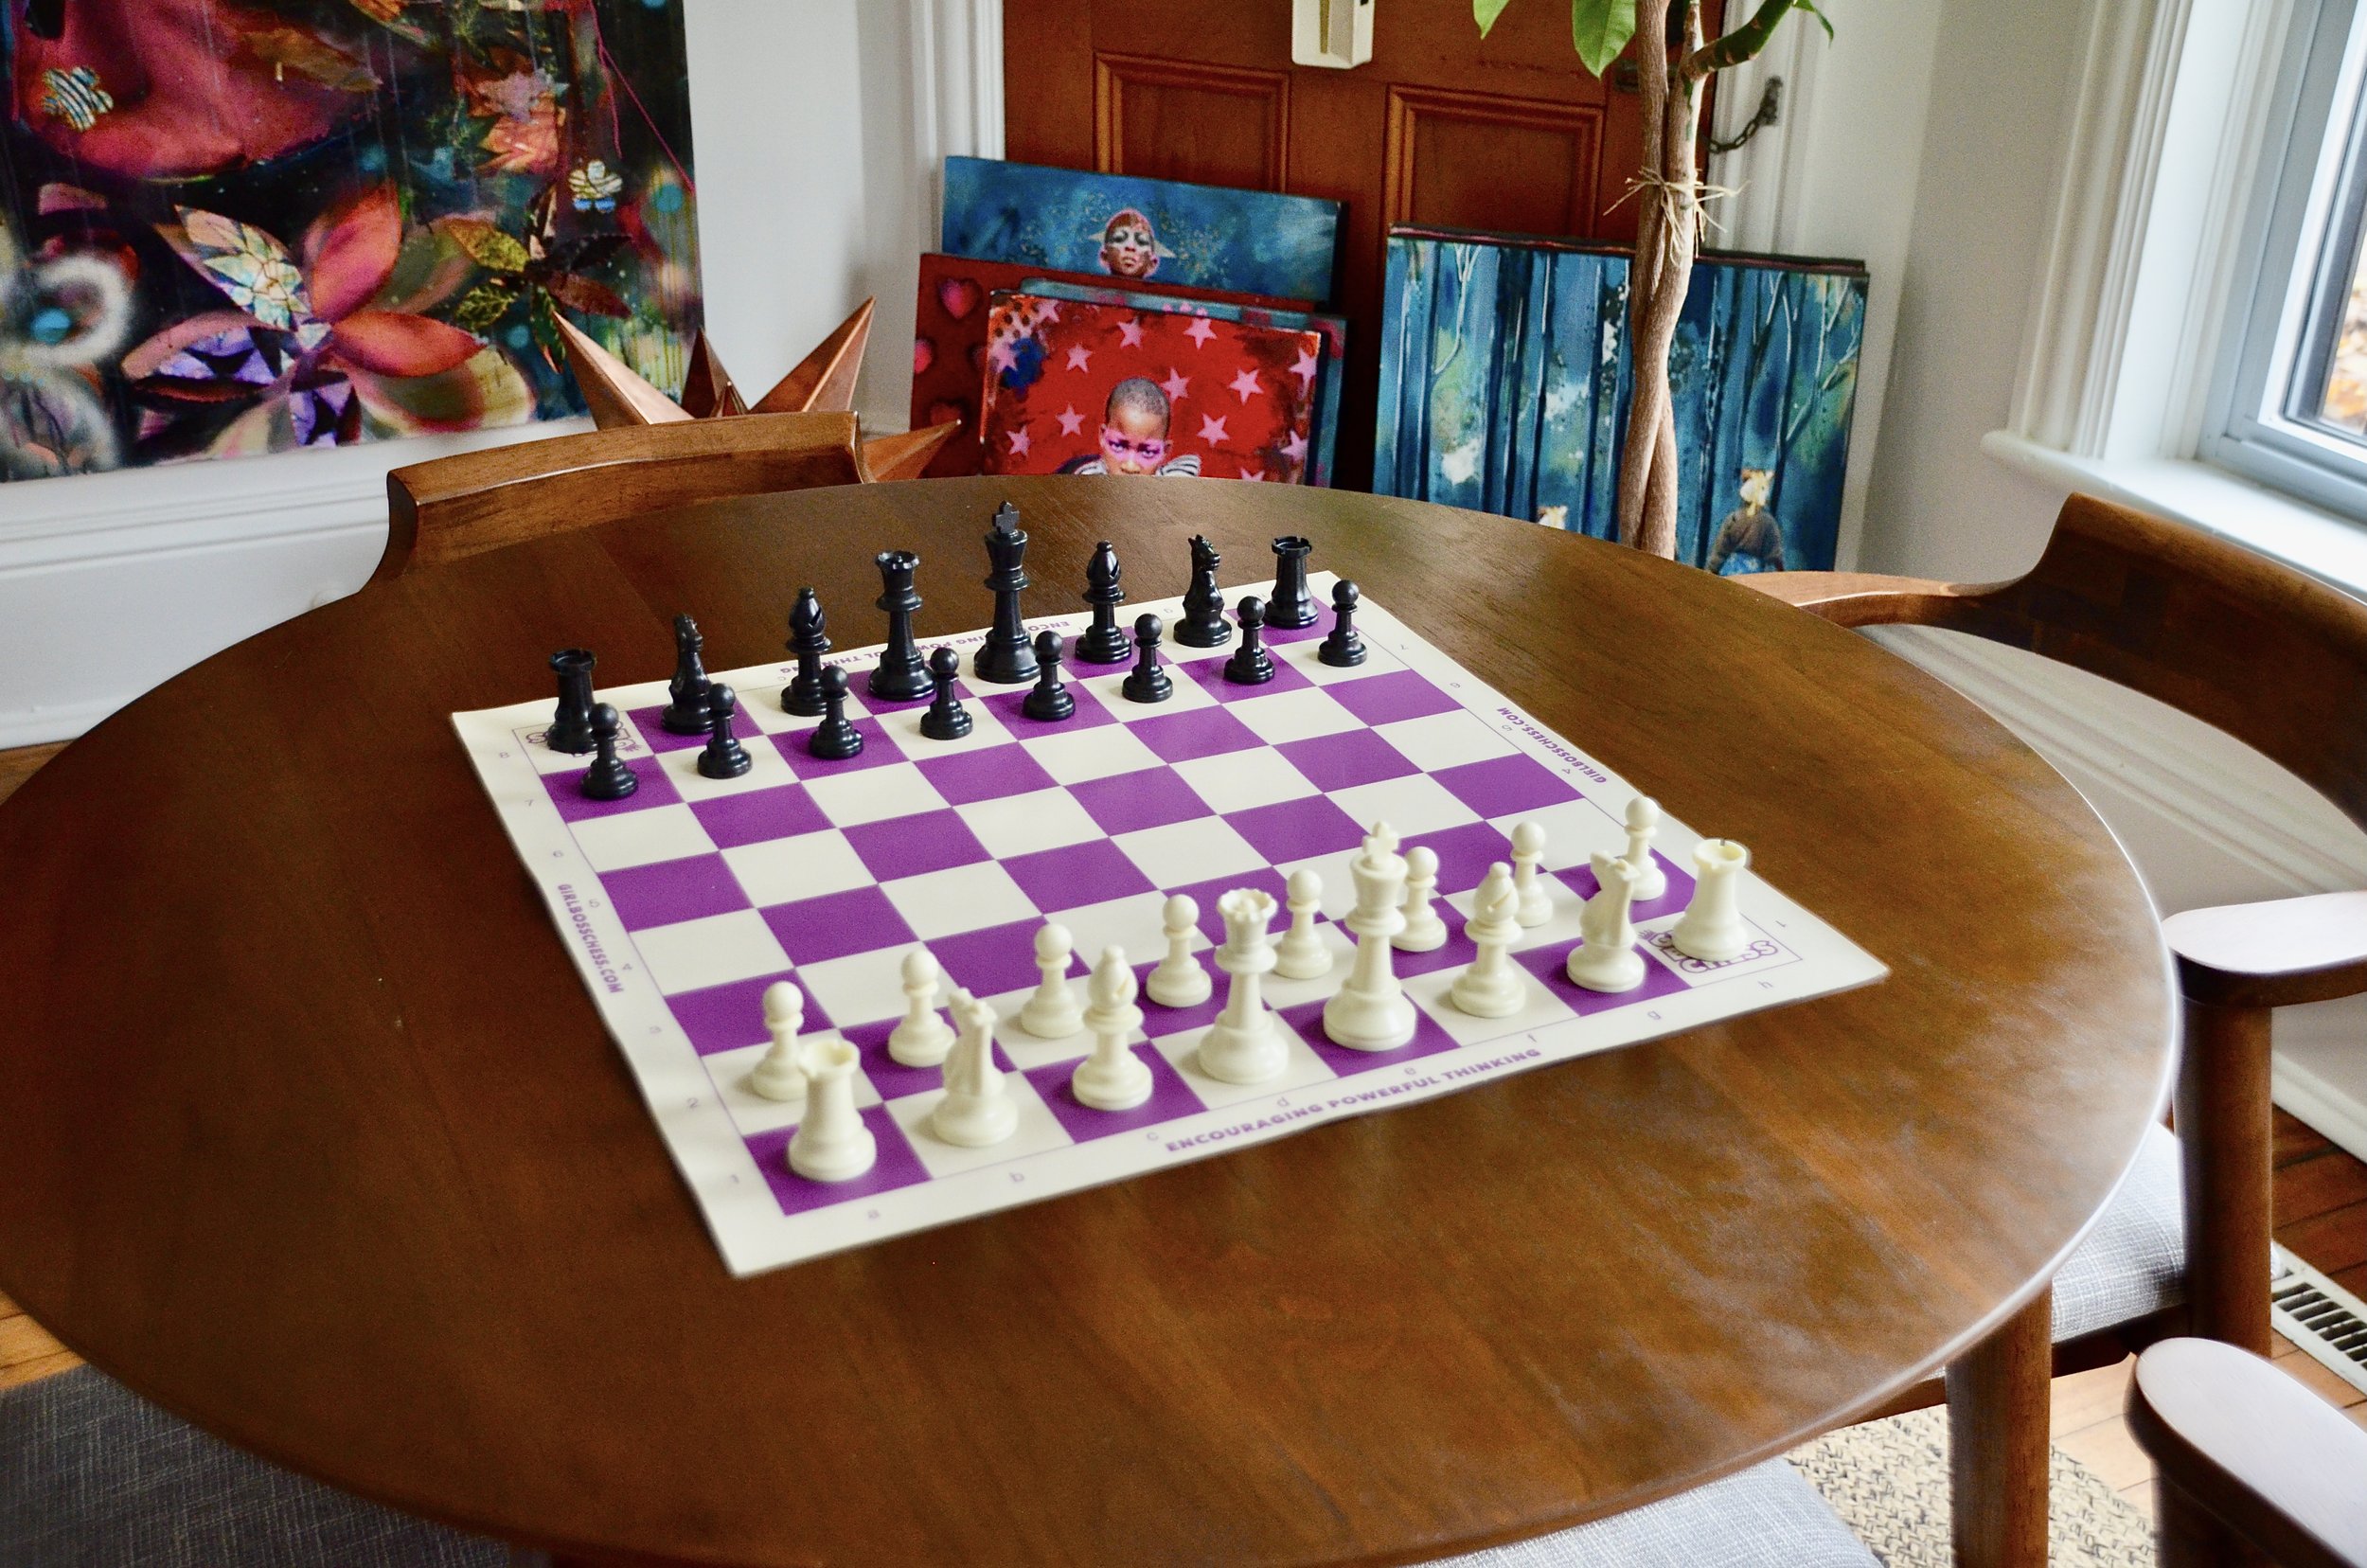 Chessboard in situ copy (1).JPG